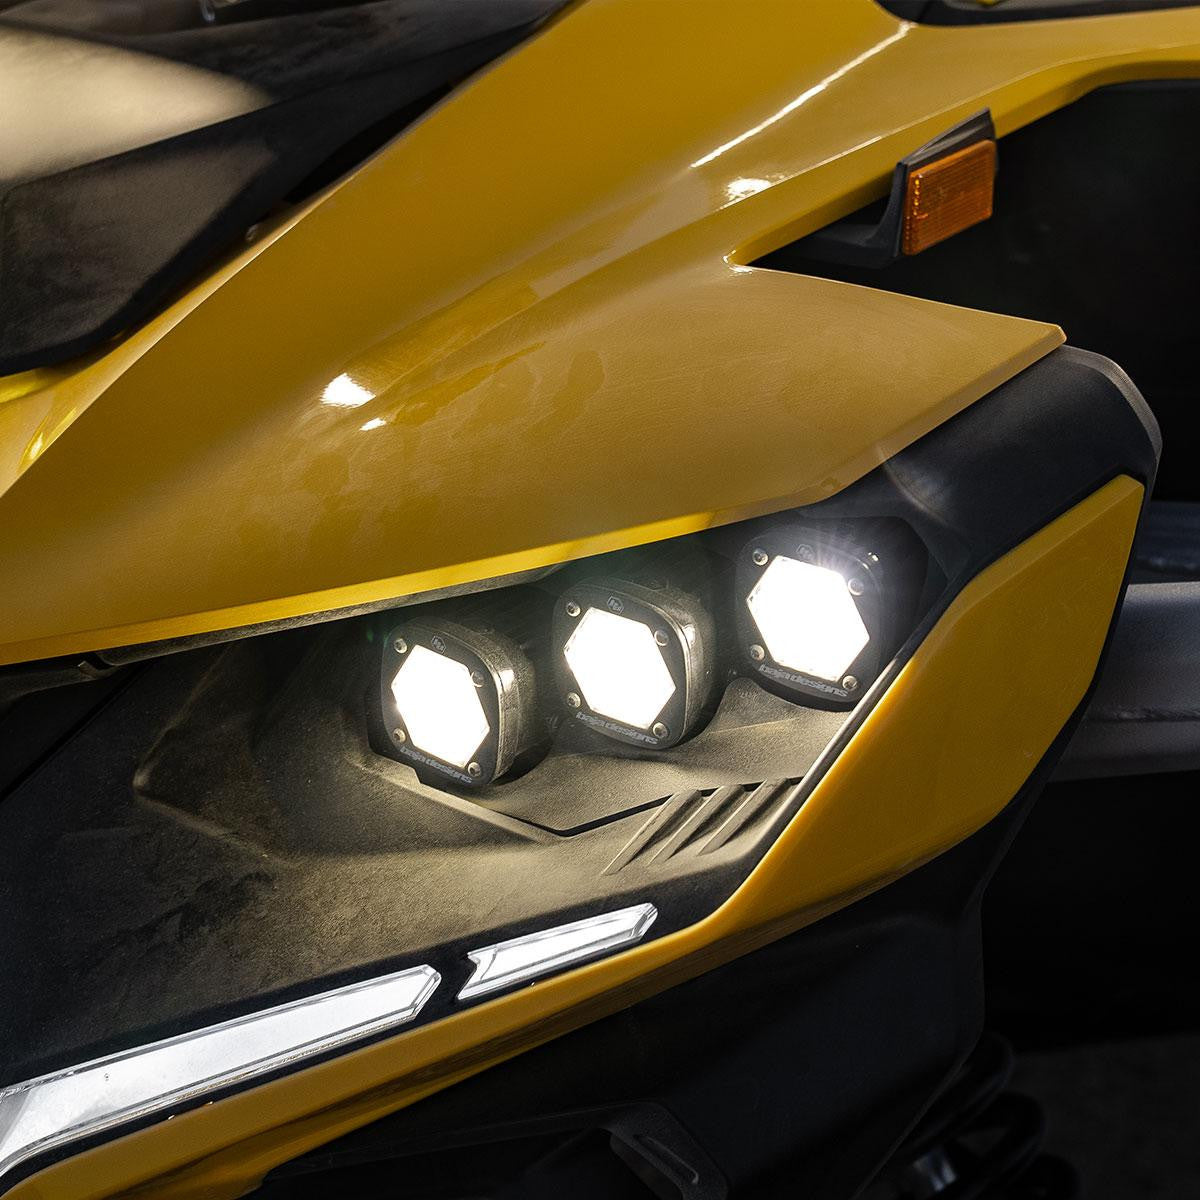 Baja Designs Can-Am Maverick R Triple S1 "Unlimited" Headlight Kit